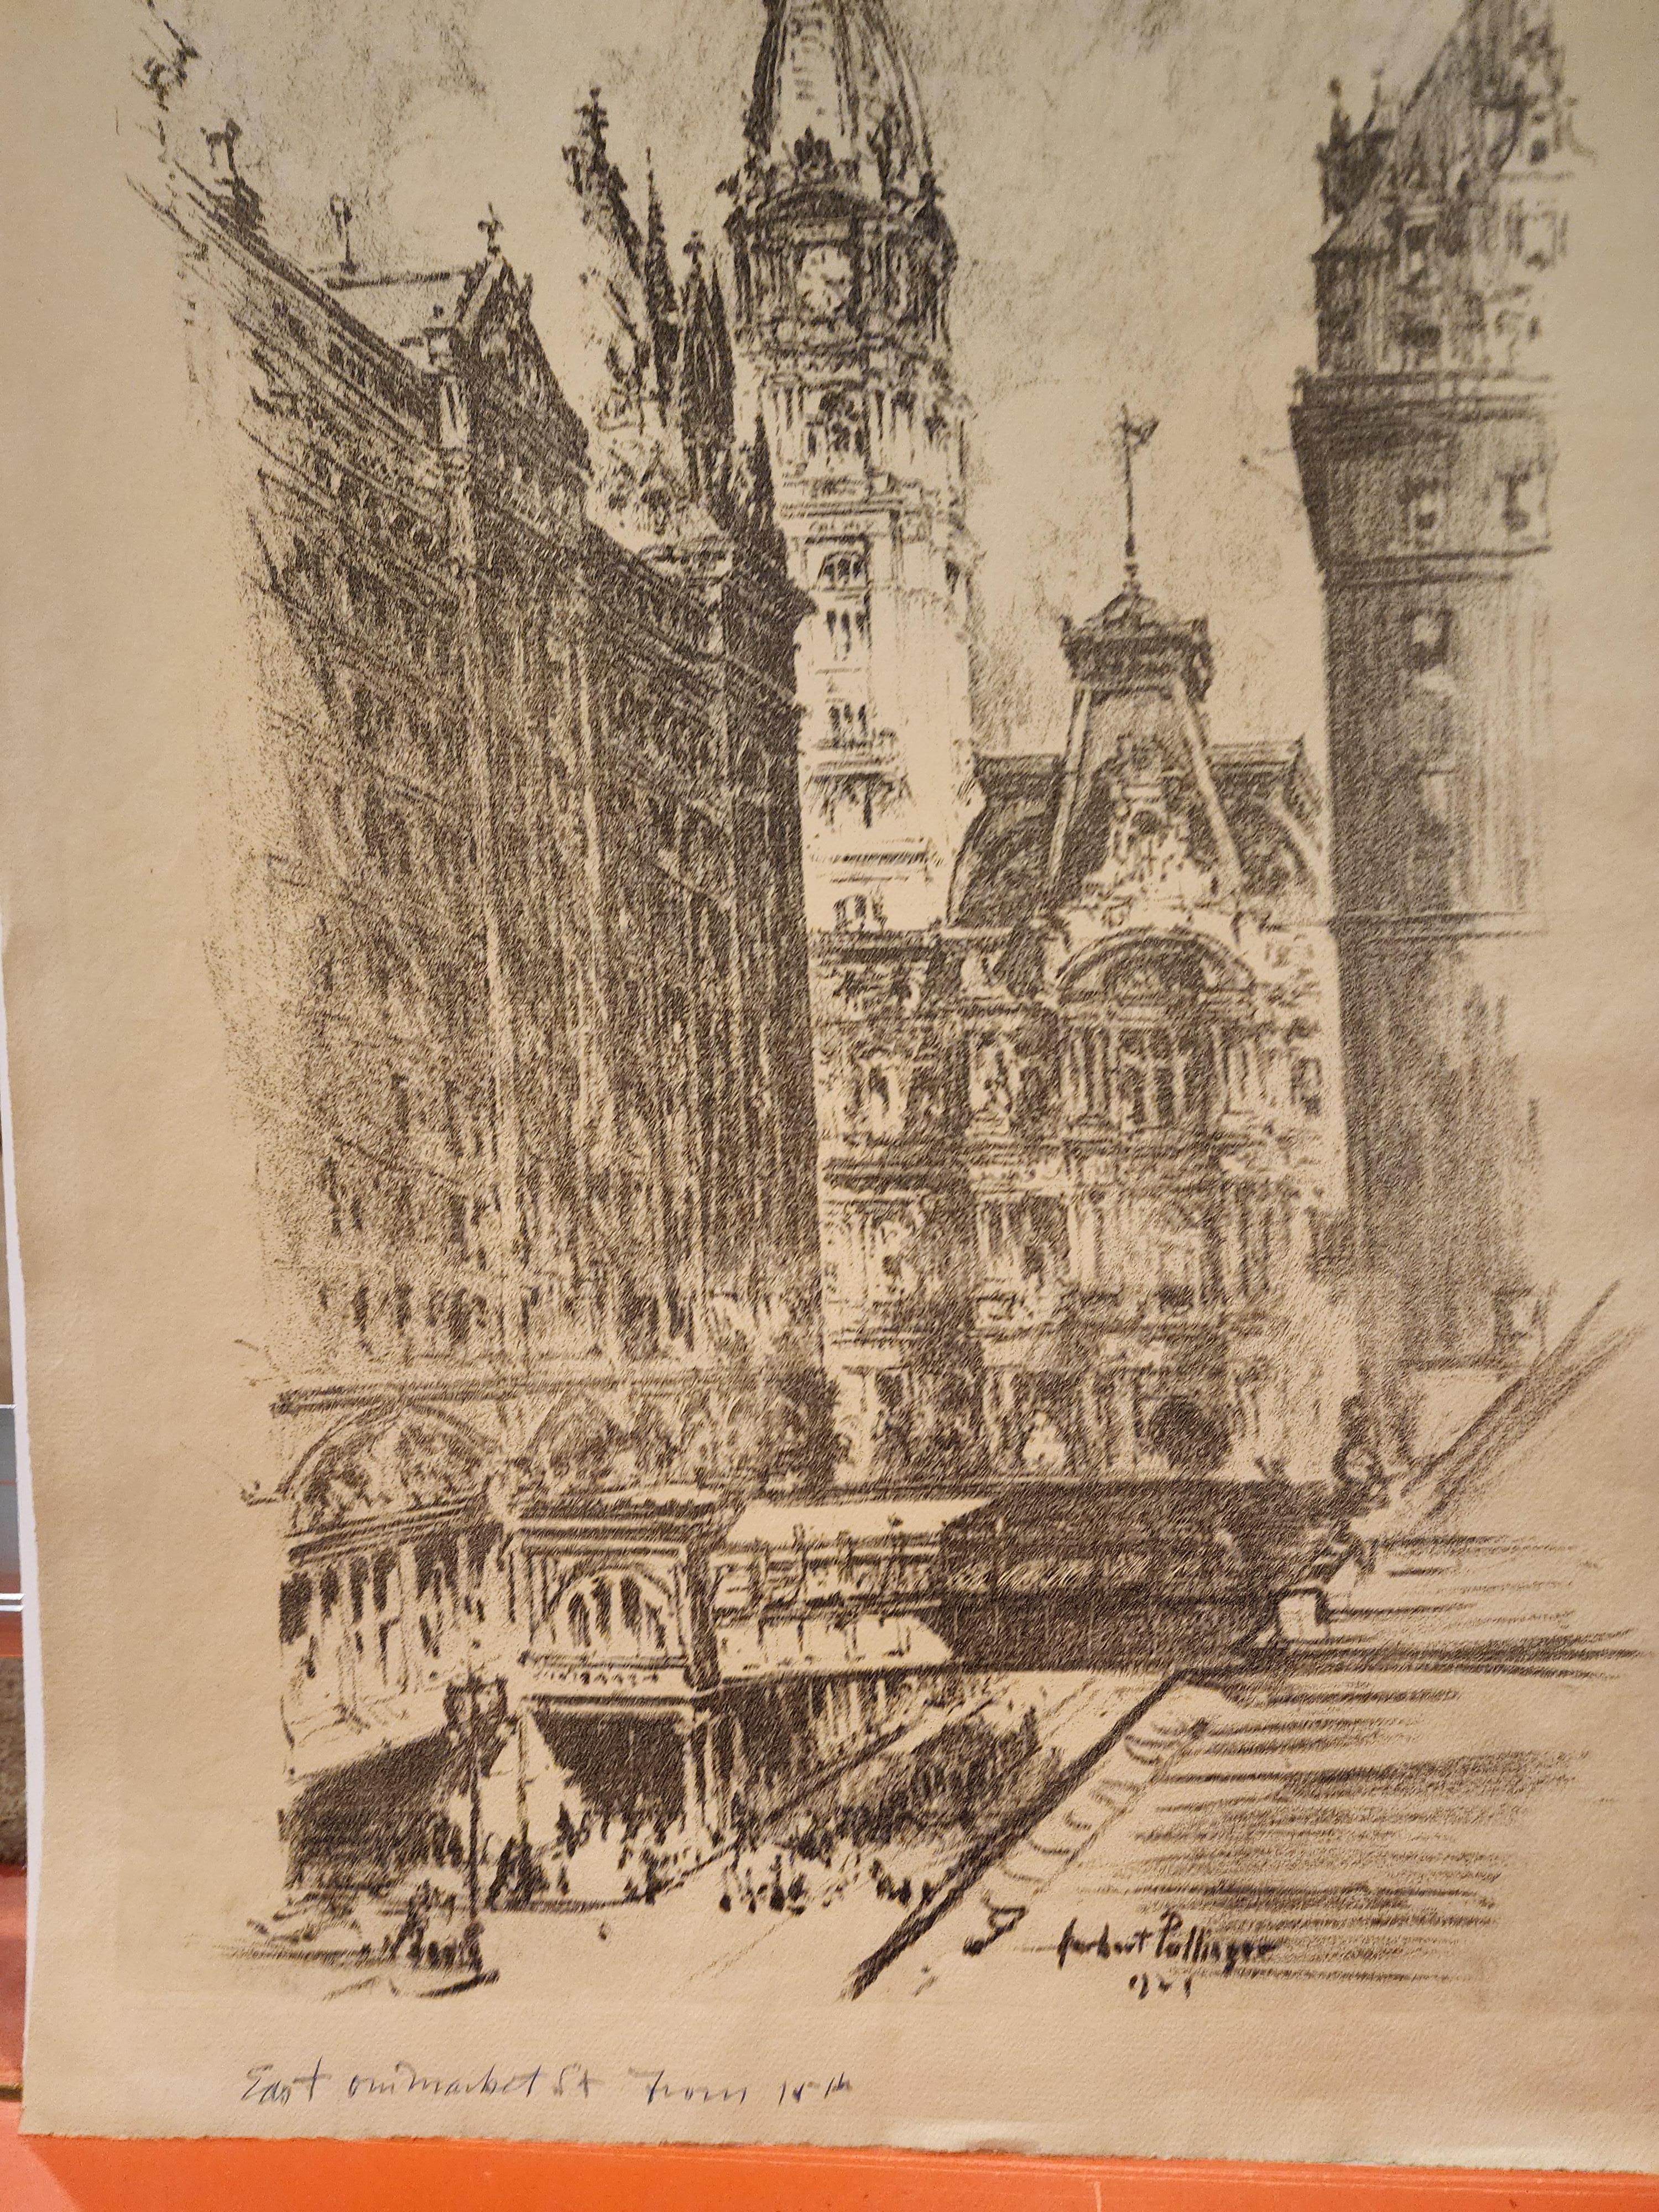 Eine monumentale Ansicht von Philadelphia von Herbert Pullinger.
In der Platte signiert und datiert 1921.
Der Titel ist in Tinte unter dem Bild vermerkt 